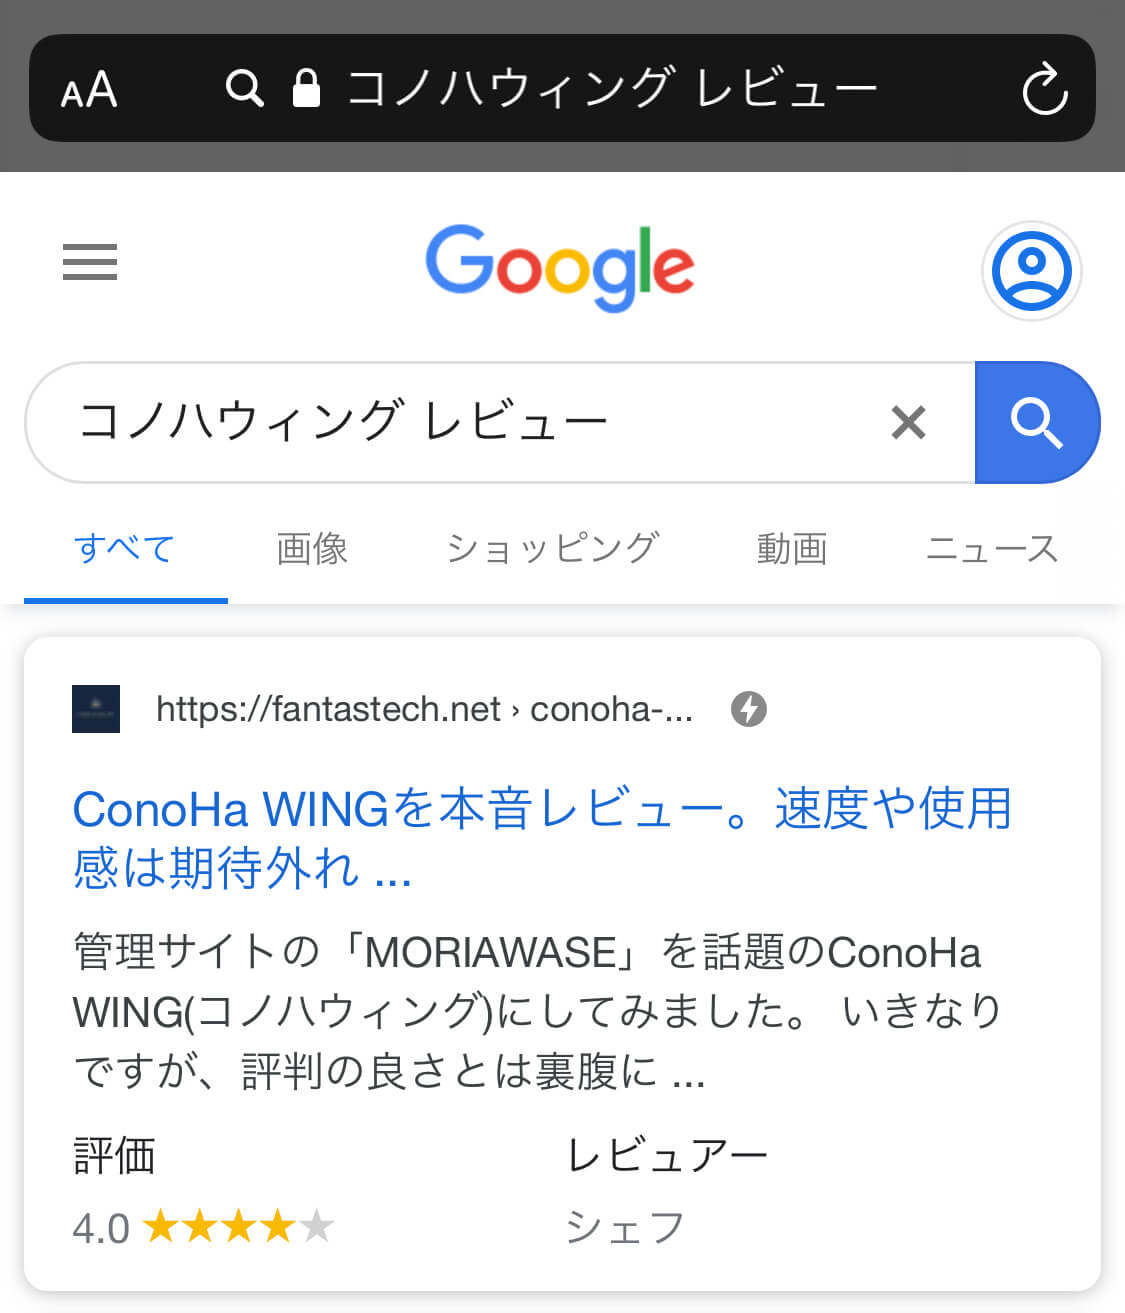 ConoHa Wingレビュー記事のスマホでの検索結果